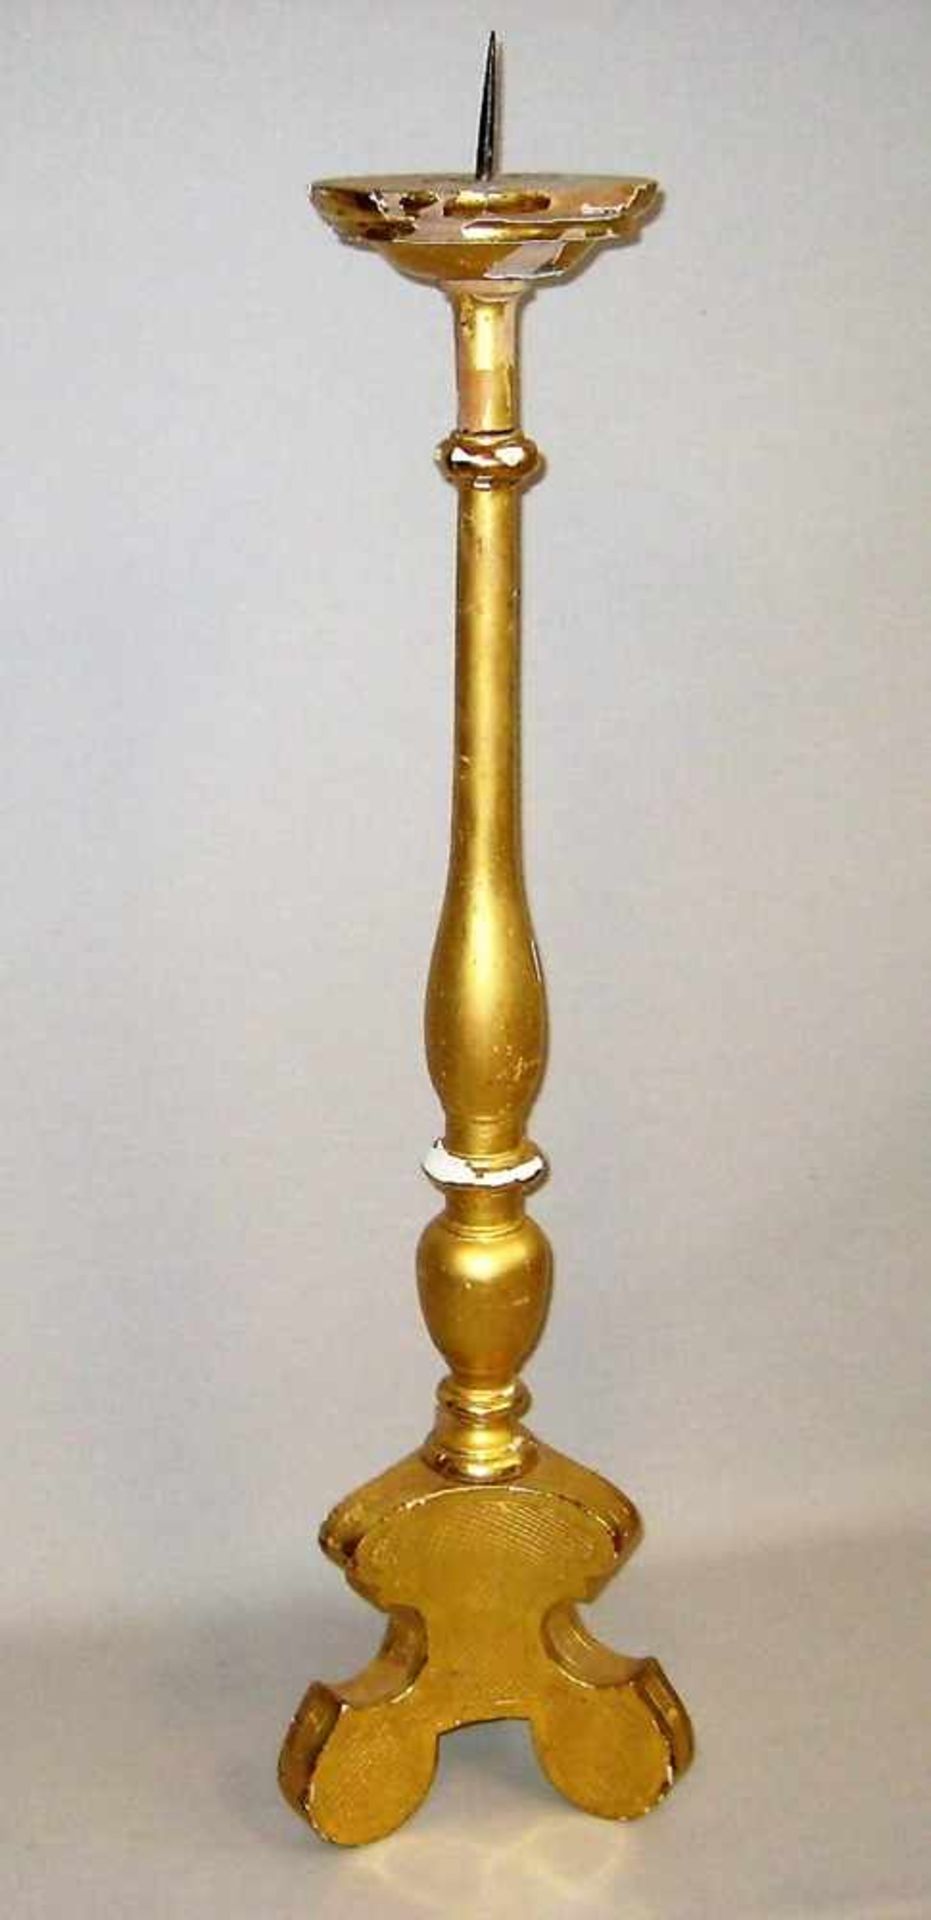 Kirchenkerzenleuchter, um 1800, Holz mit Blattvergoldung, h 86 cm, d 20 cm.- - -19.00 % buyer's